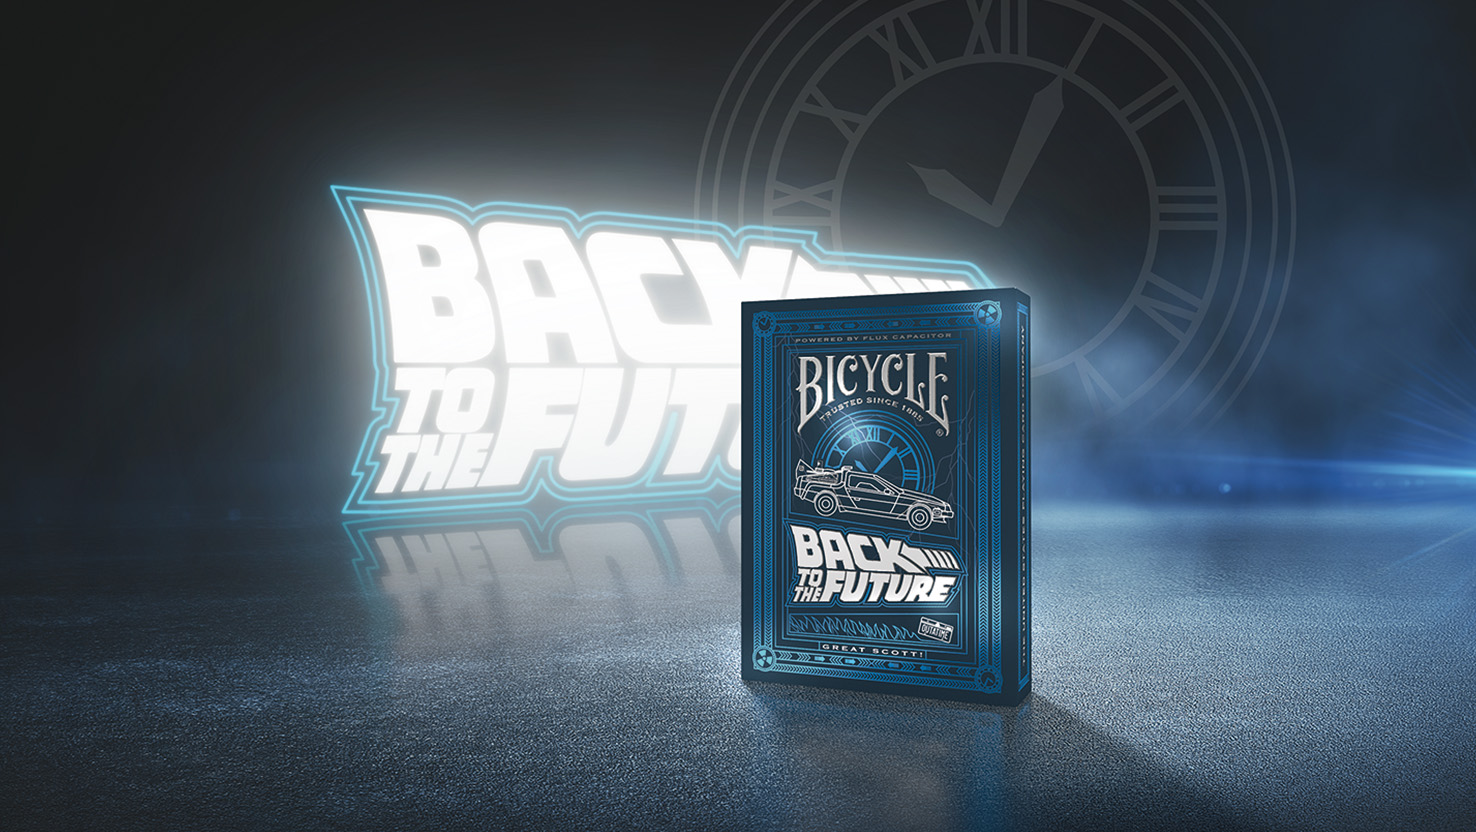 Das neue Back to the Future Kartenspiel der Bicycle Creatives Kartendecks steht vor einem dunklen Hintergrund in dem das back to the Future Logo leuchtet.